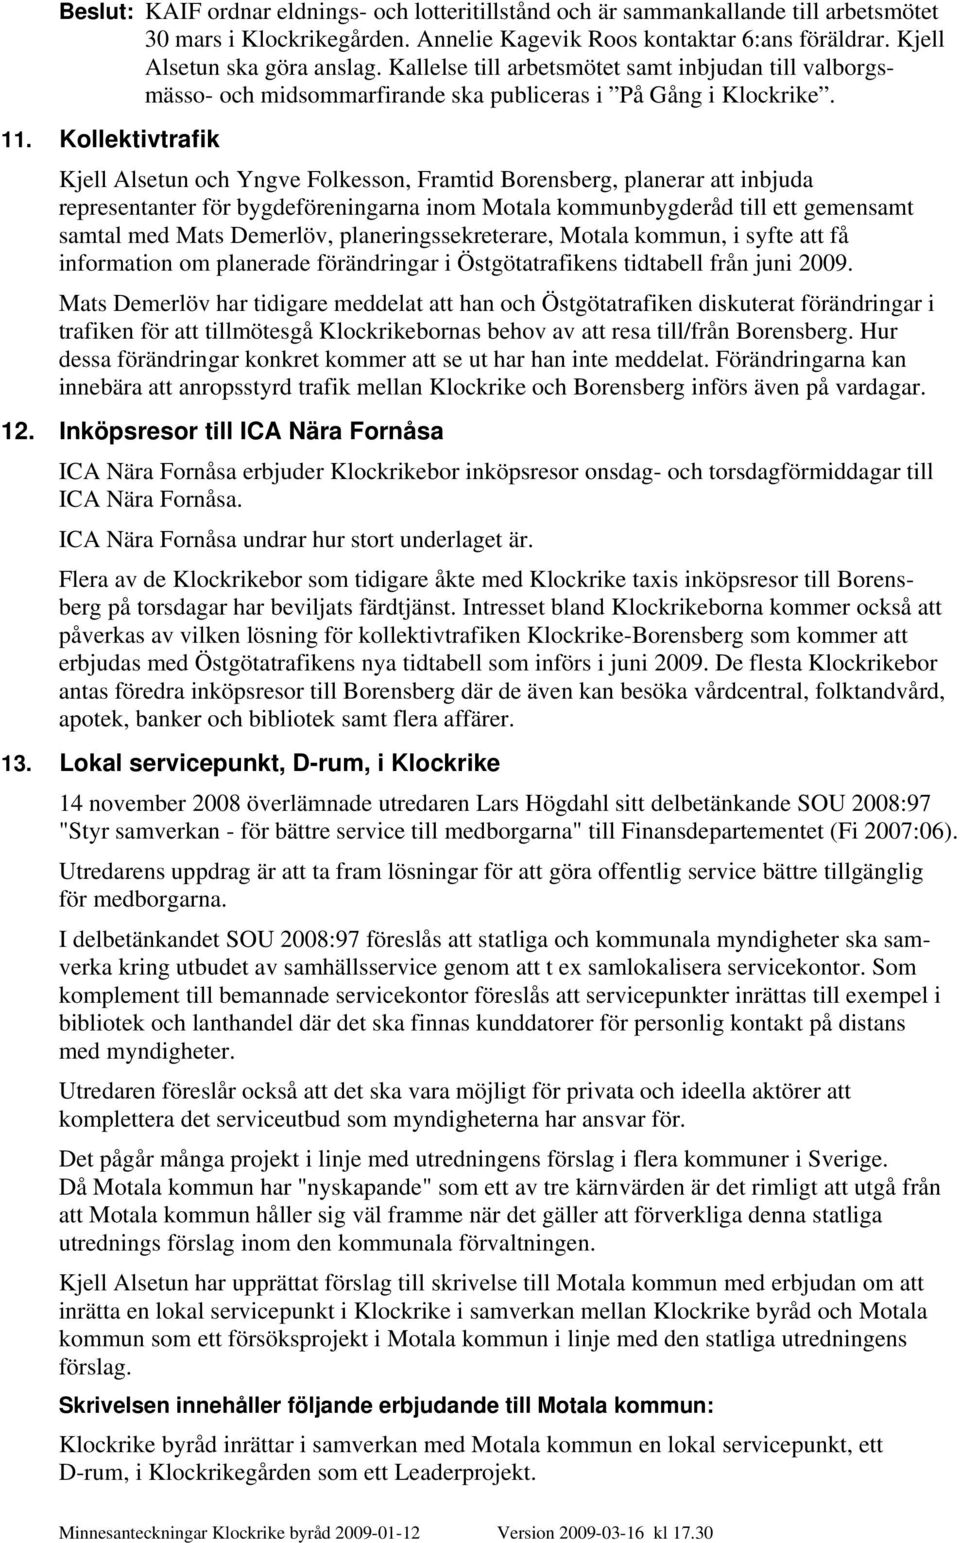 Kollektivtrafik Kjell Alsetun och Yngve Folkesson, Framtid Borensberg, planerar att inbjuda representanter för bygdeföreningarna inom Motala kommunbygderåd till ett gemensamt samtal med Mats